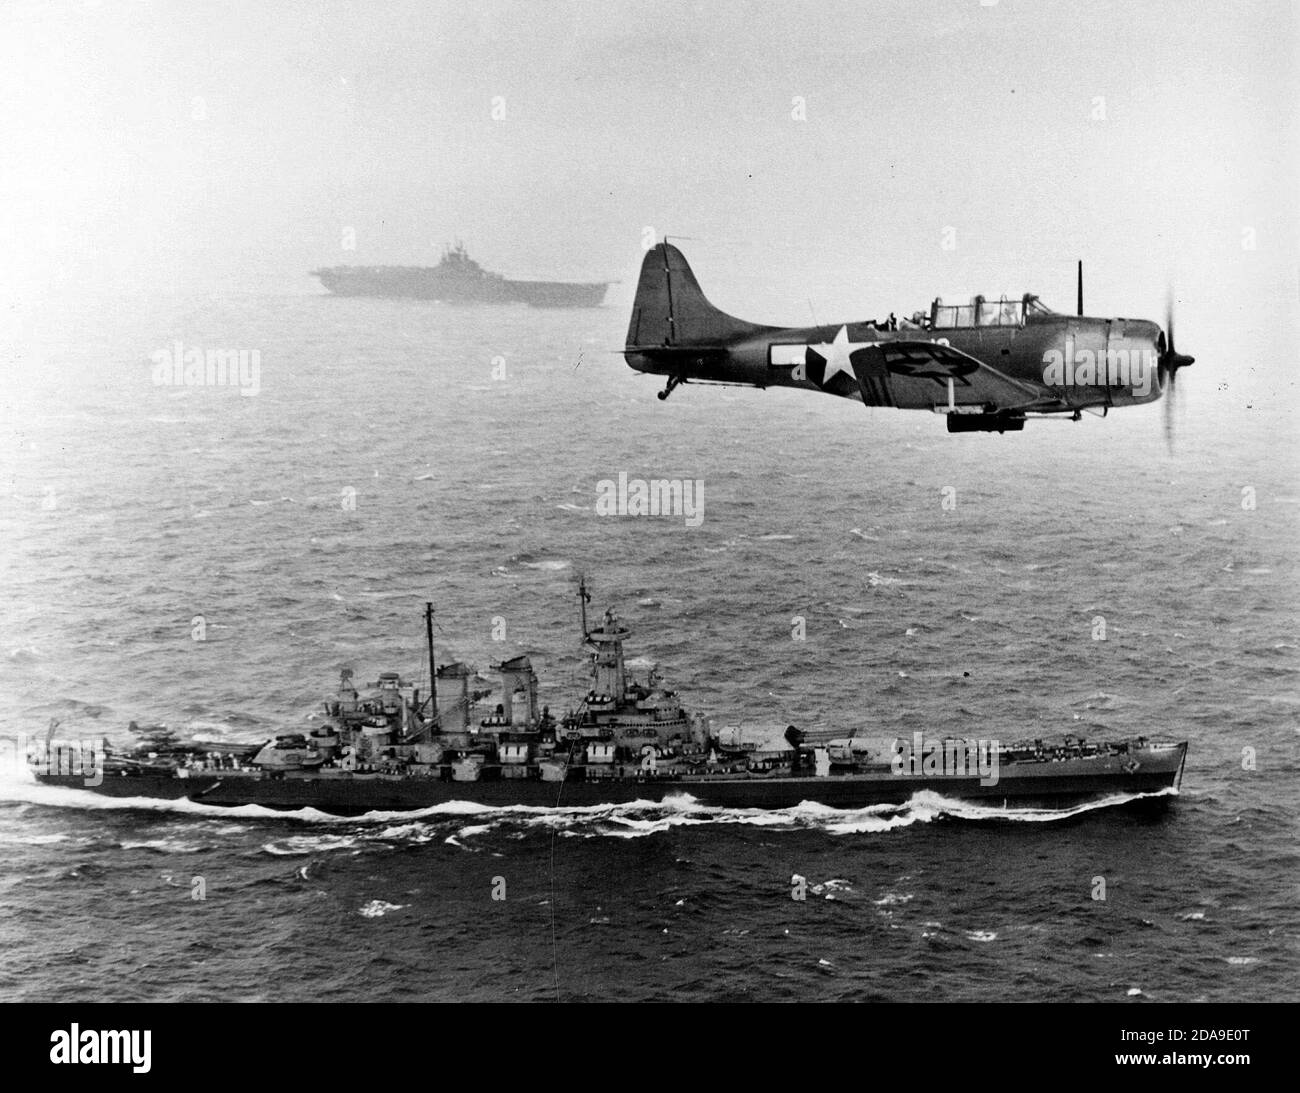 Une marine américaine Douglas SBD-5 Dauntless de l'escadron de bombardement VB-16 vole une patrouille antisous-marine au-dessus du cuirassé USS Washington (BB-56) en route vers l'invasion des îles Gilbert, le 12 novembre 1943. Le navire en arrière-plan est le USS Lexington (CV-16), le porte-avions. Notez la charge de profondeur sous le SBD. 12 novembre 1943 Banque D'Images